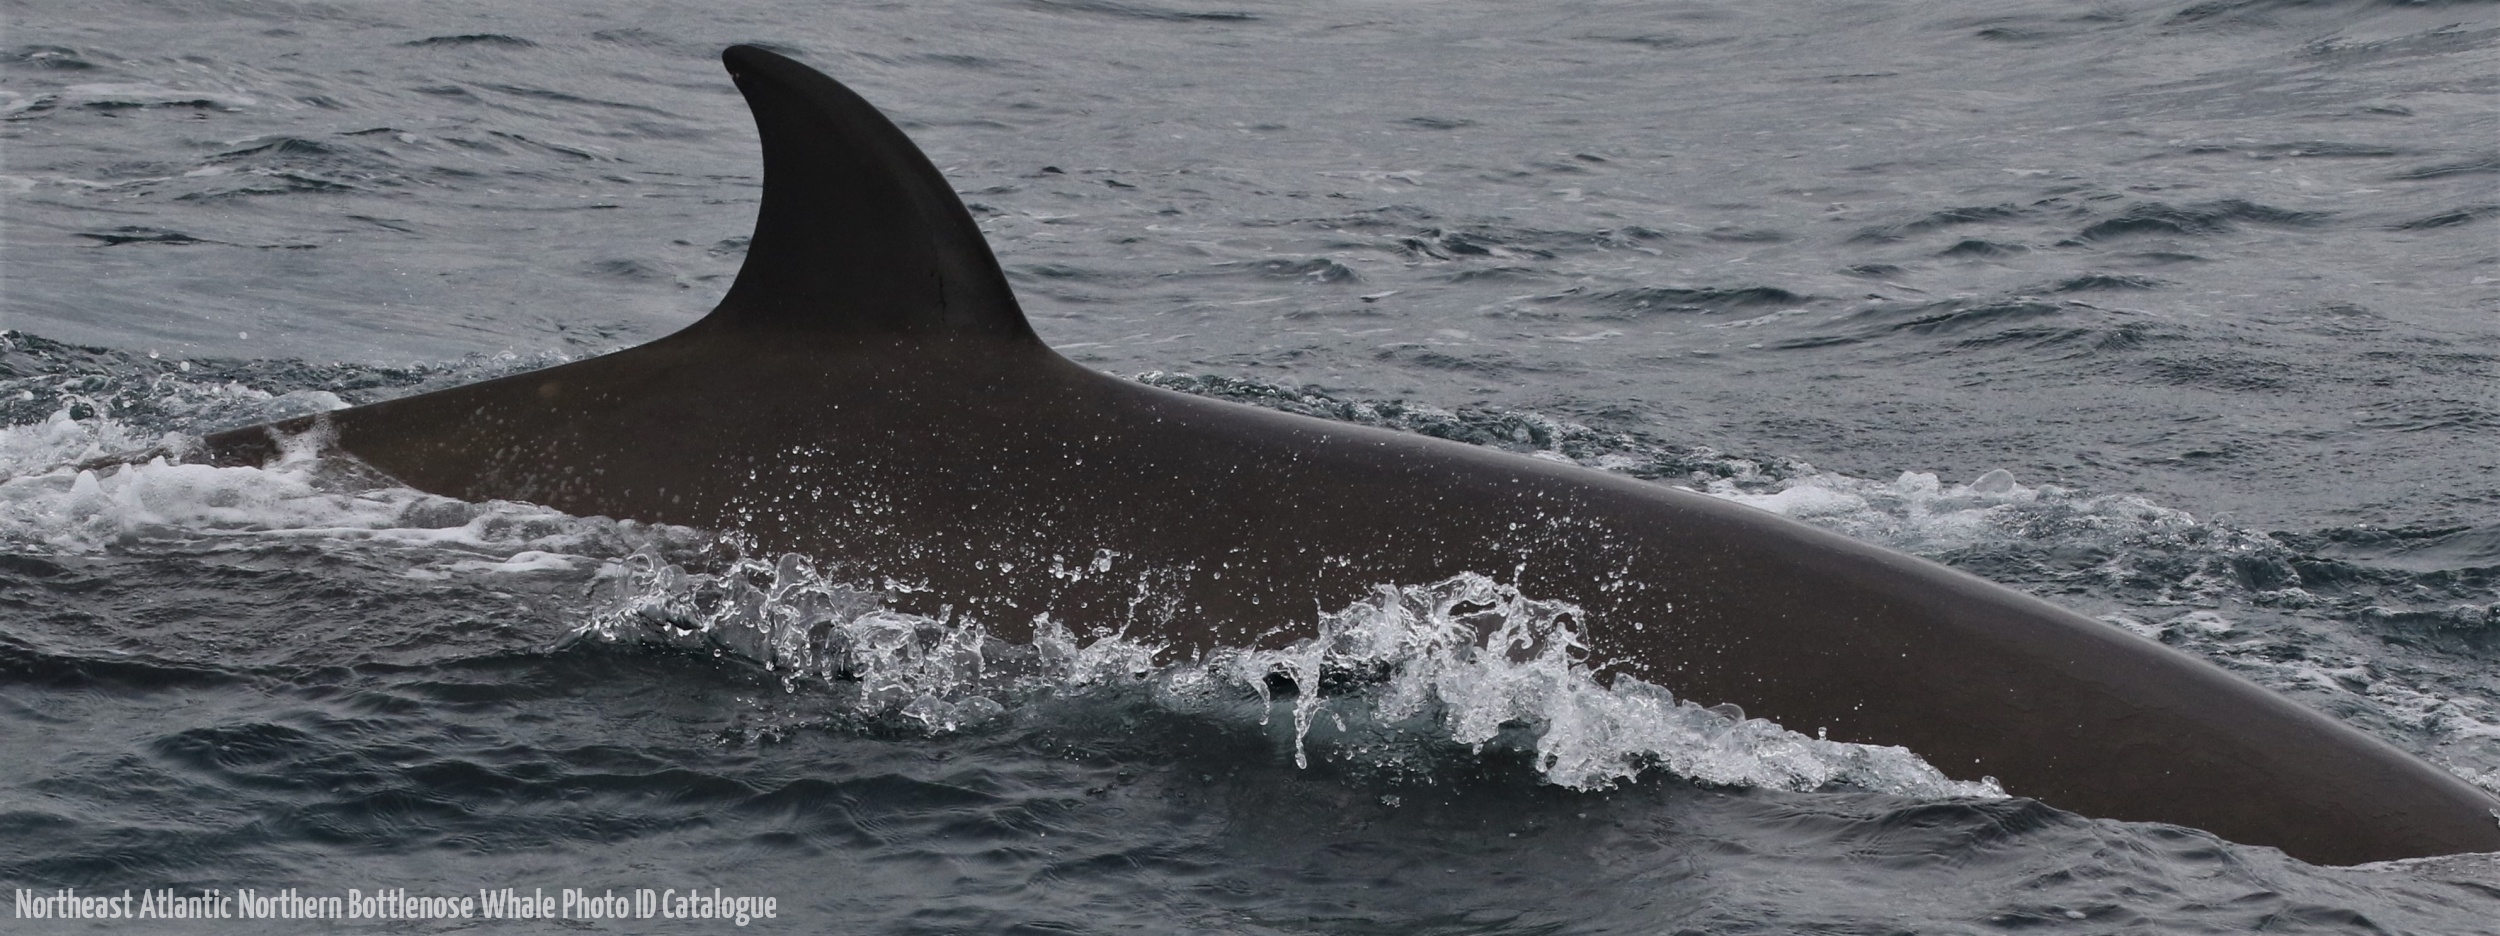 Whale ID: 0365,  Date taken: 16-06-2016,  Photographer: Eilidh Siegal